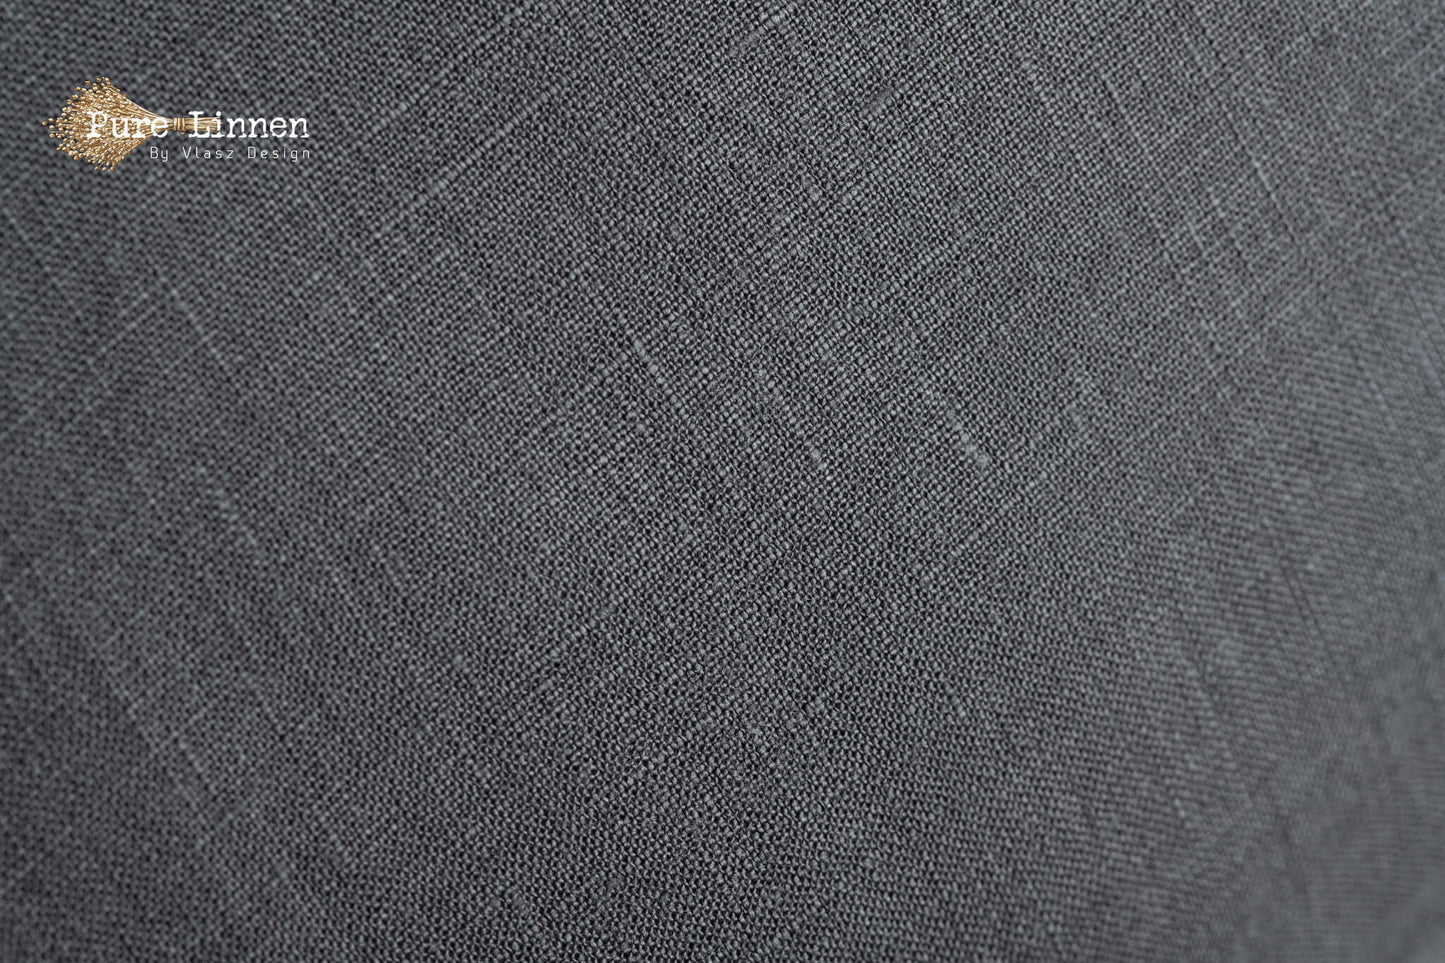 Linen Duvet Cover Dark Gray/Buttons - Pure Linen